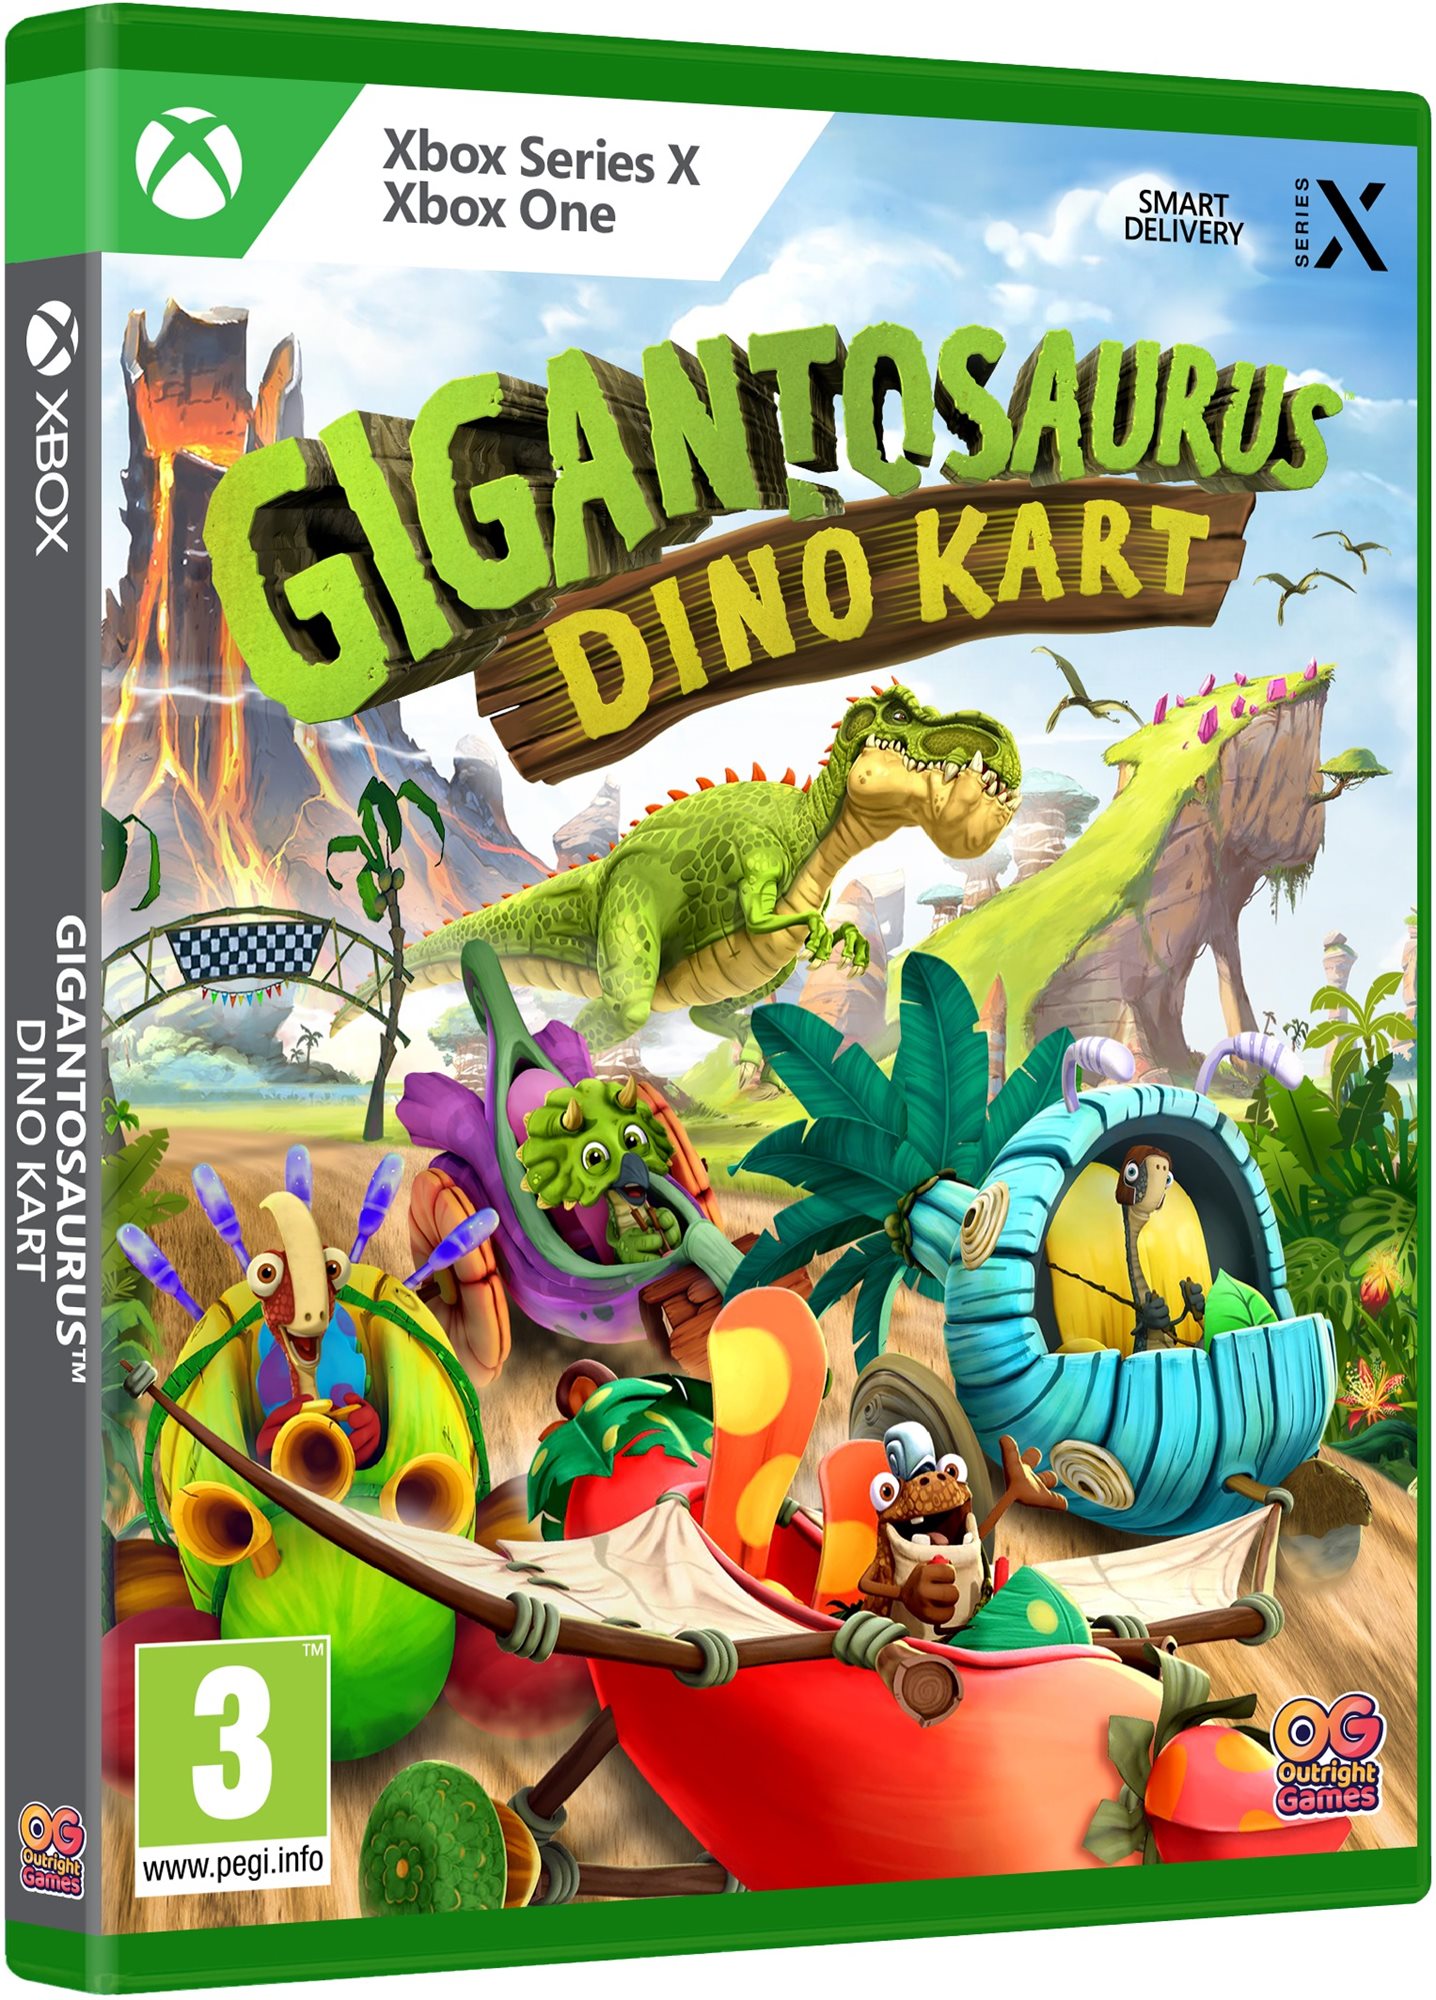 Gigantosaurus: Dino Kart - Xbox